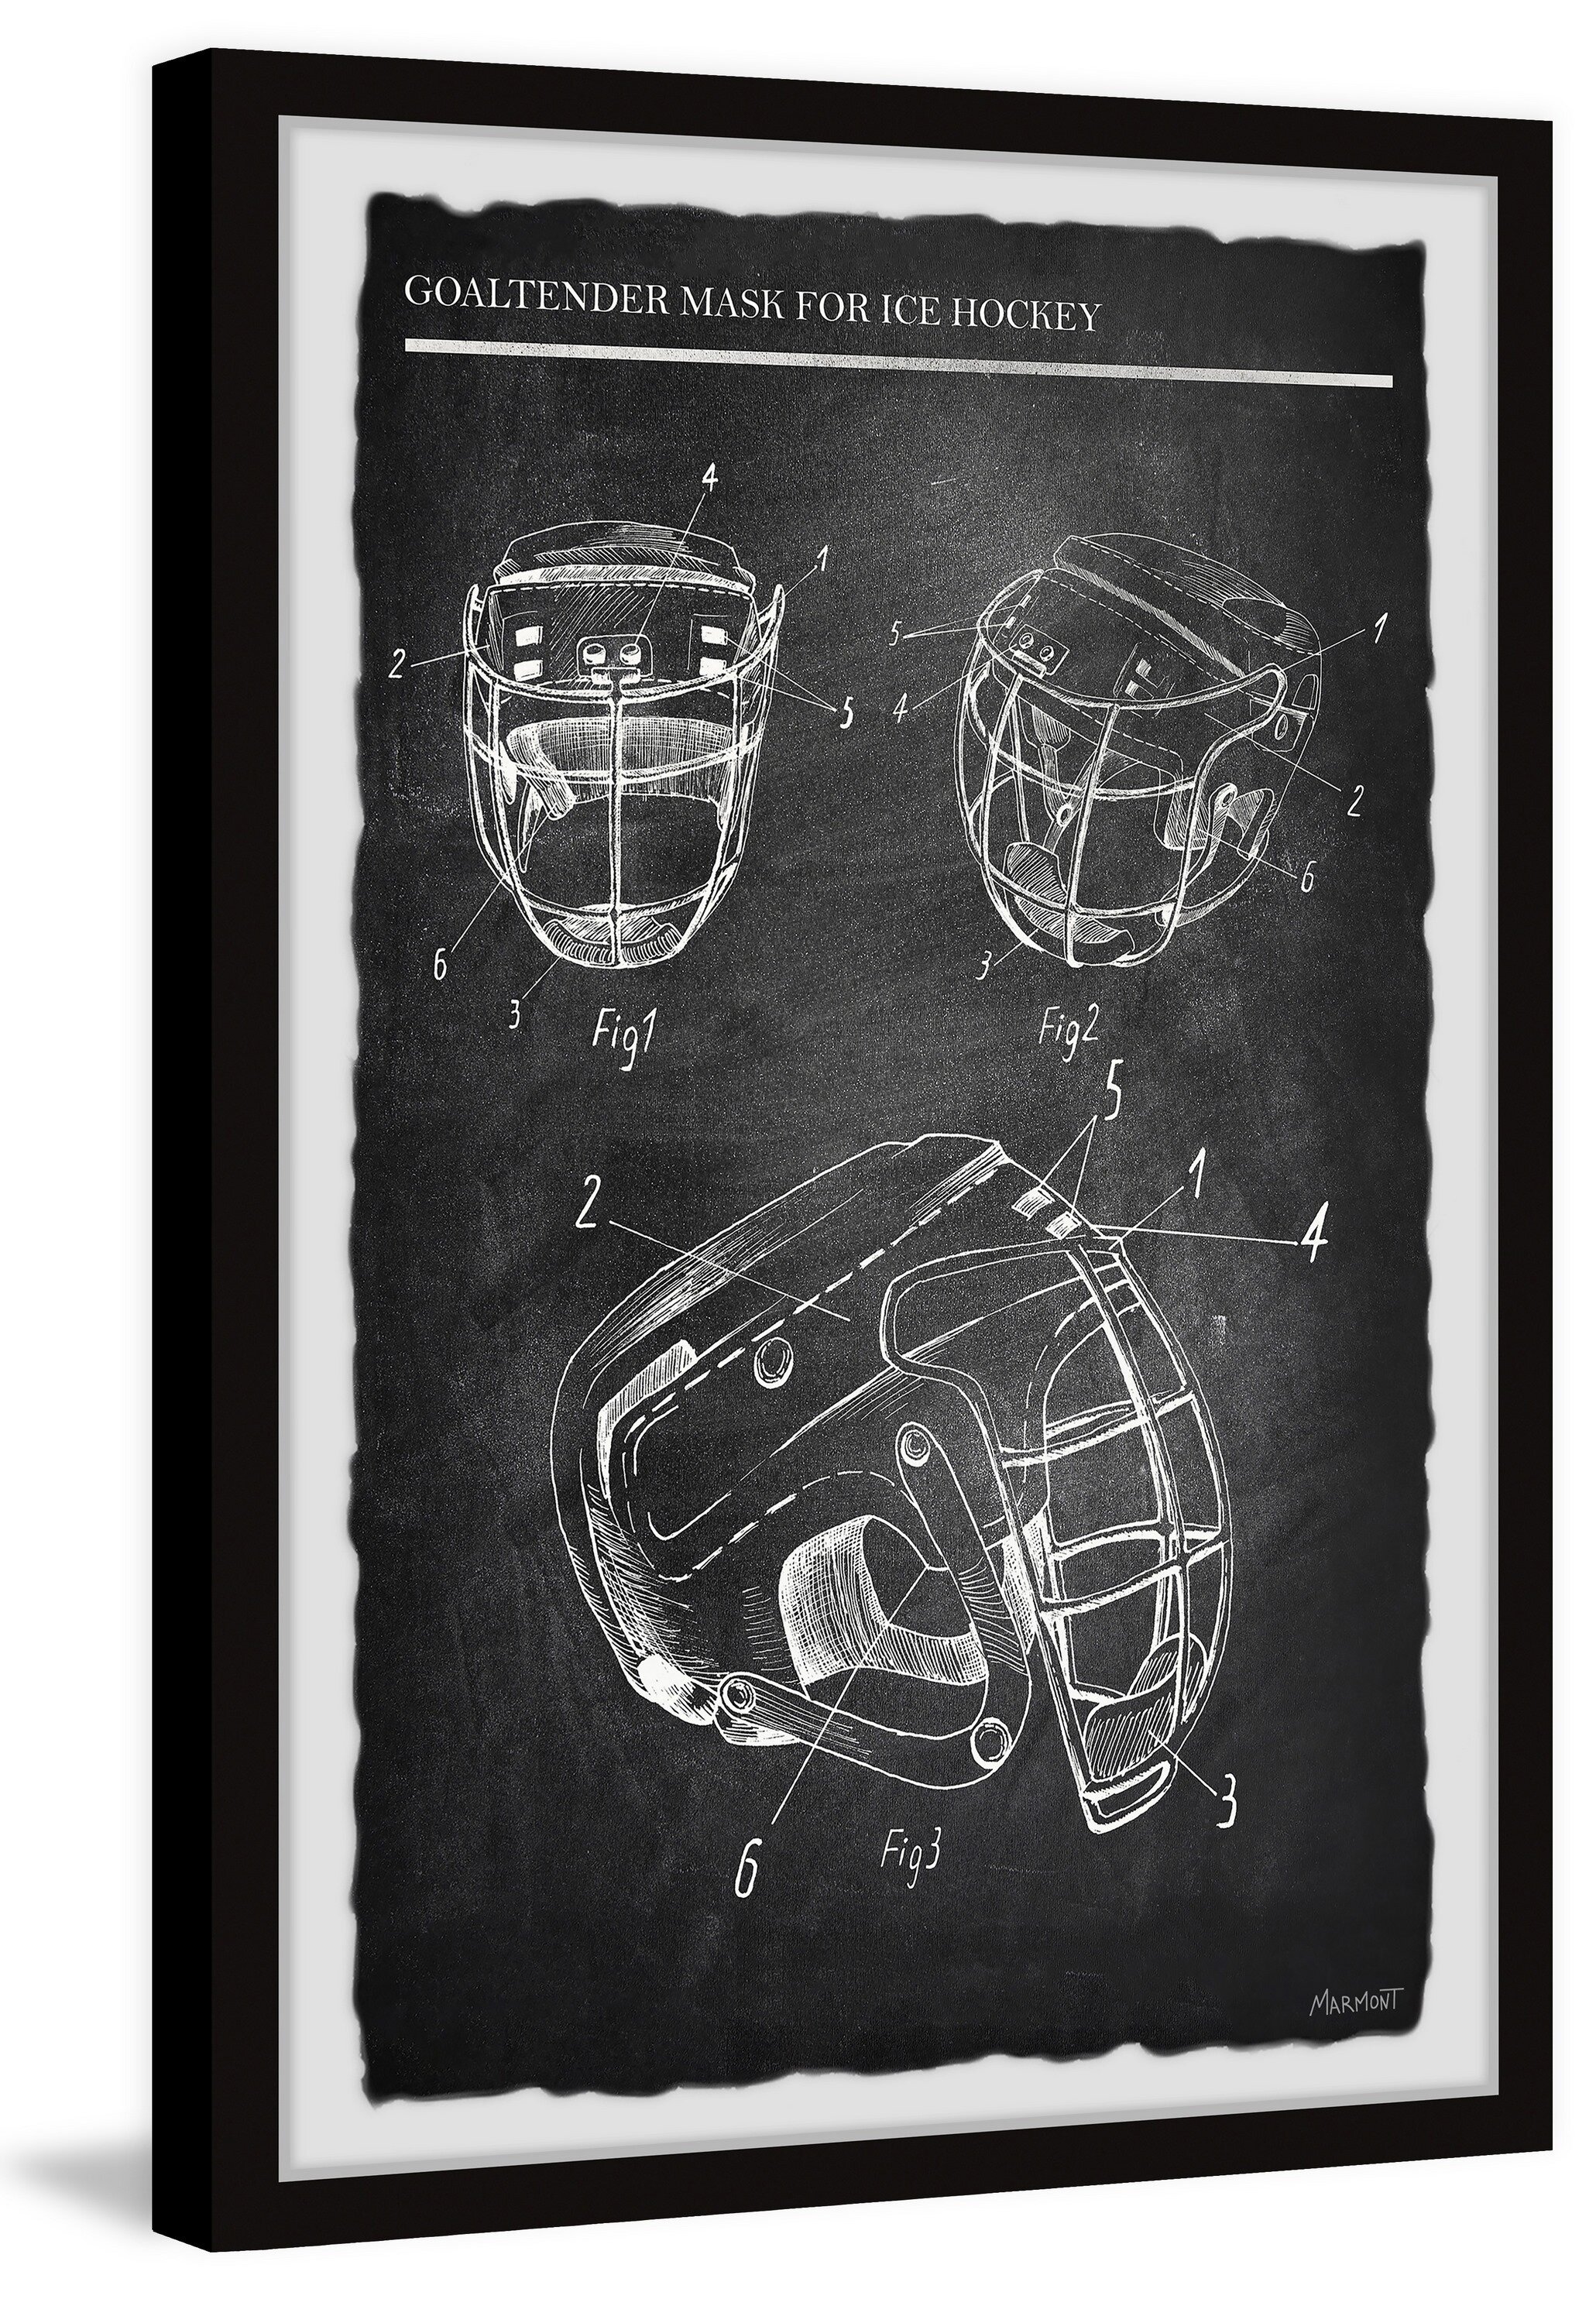 https://assets.wfcdn.com/im/76688522/compr-r85/1052/105217129/goaltender-mask-for-ice-hockey-li-framed-on-paper-print.jpg